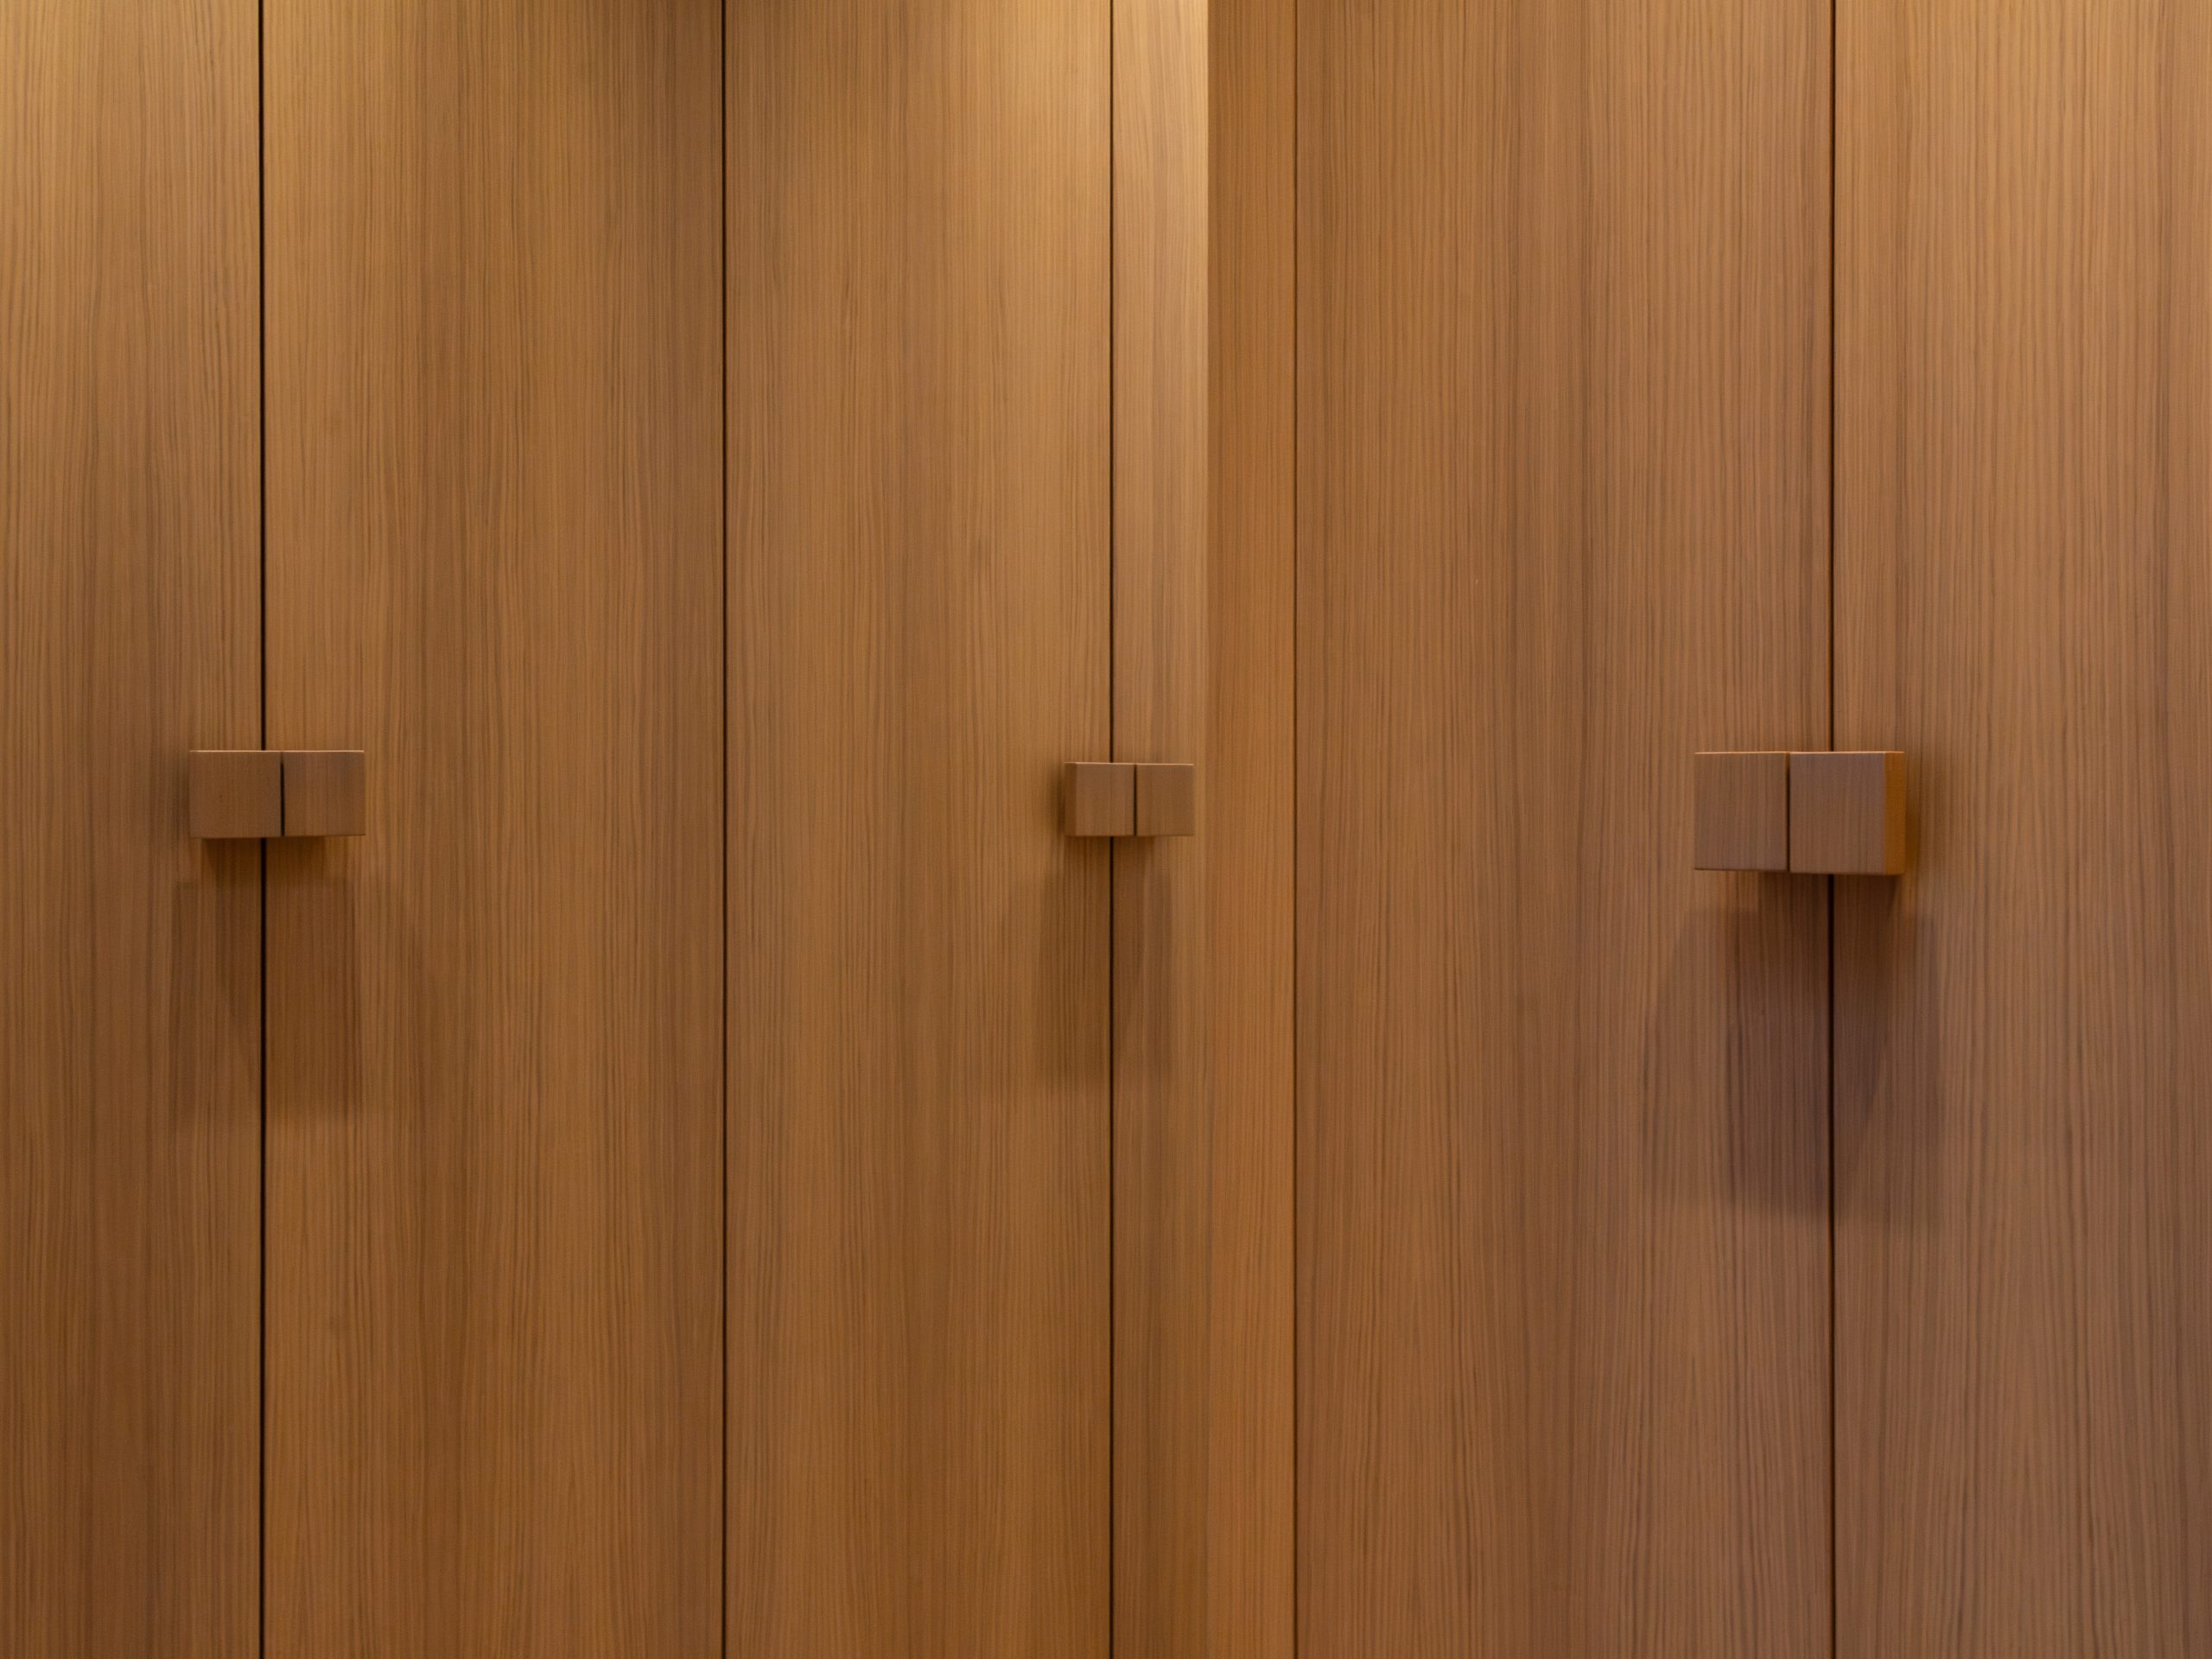 detail of big wooden doors with square door handles